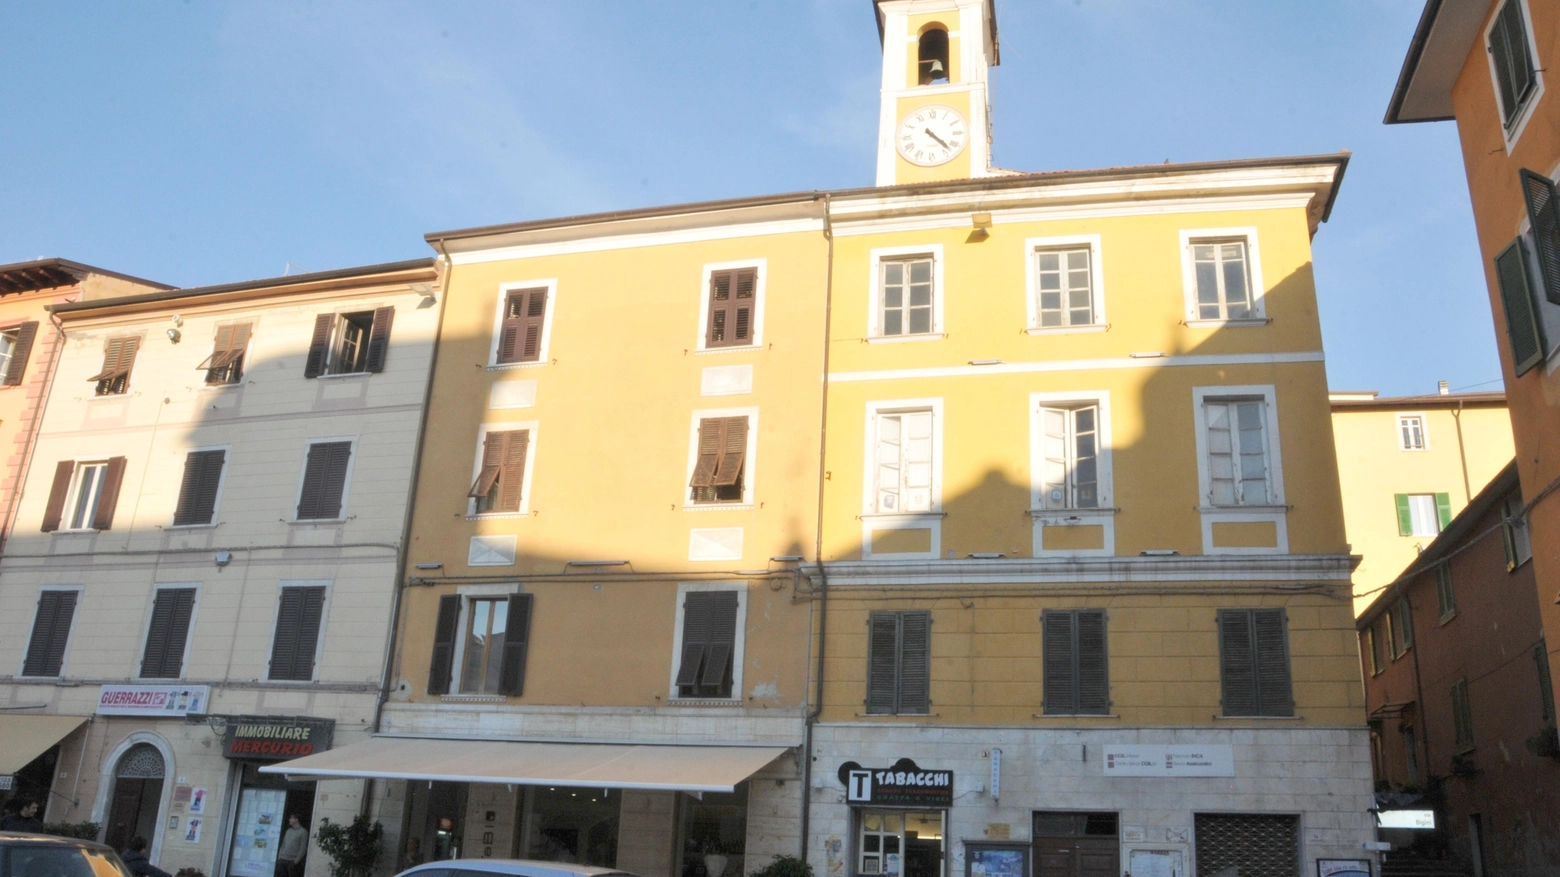 Palazzo Nizza in piazza Mercurio